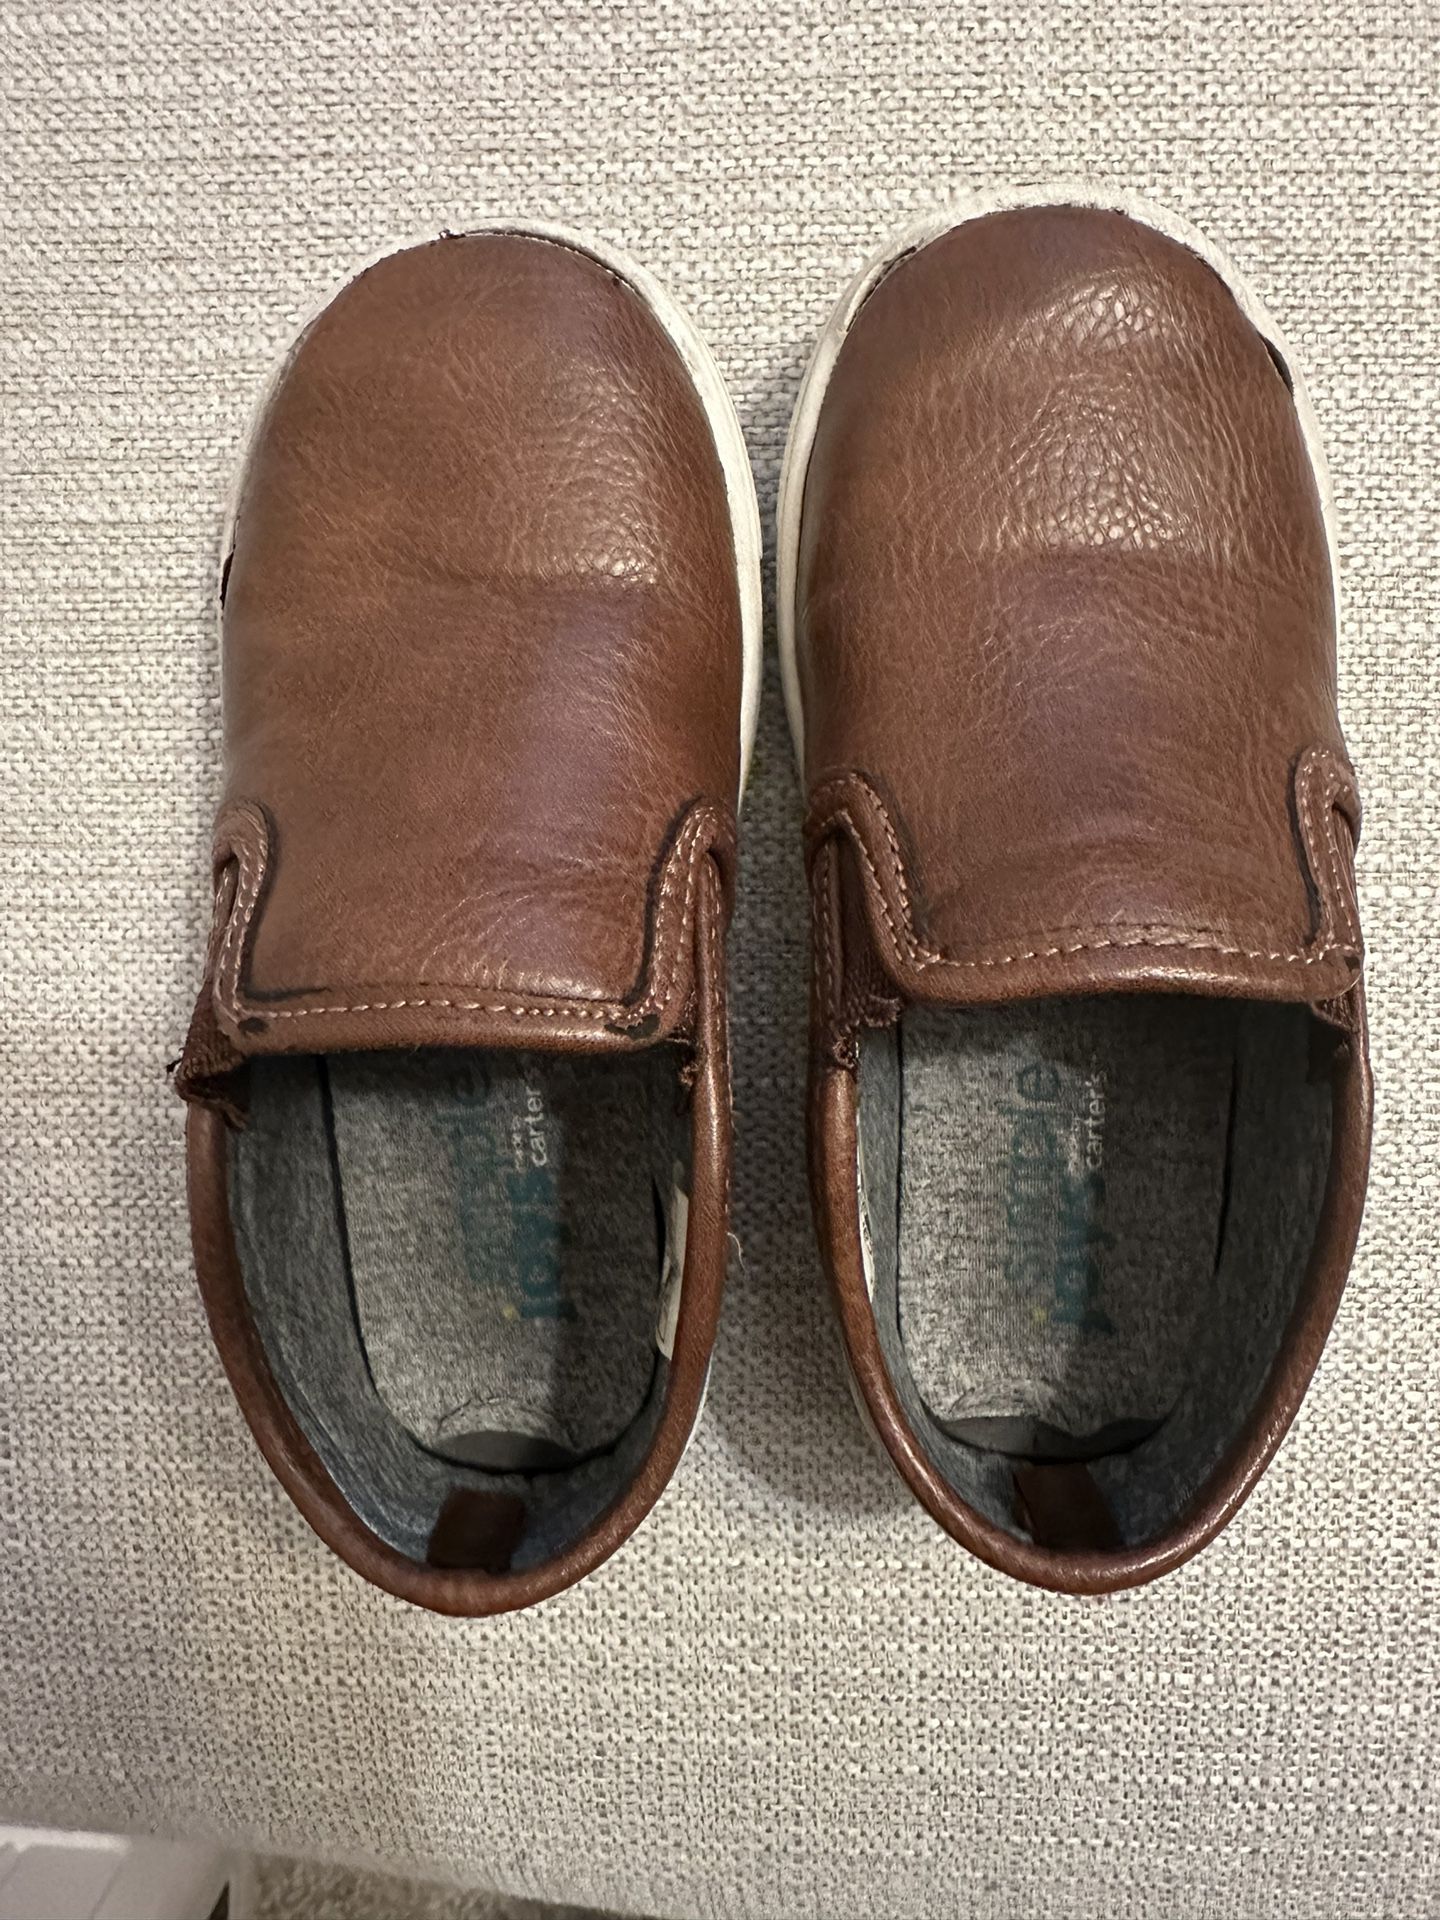 Size 8 Boy Shoes (3T-5T)